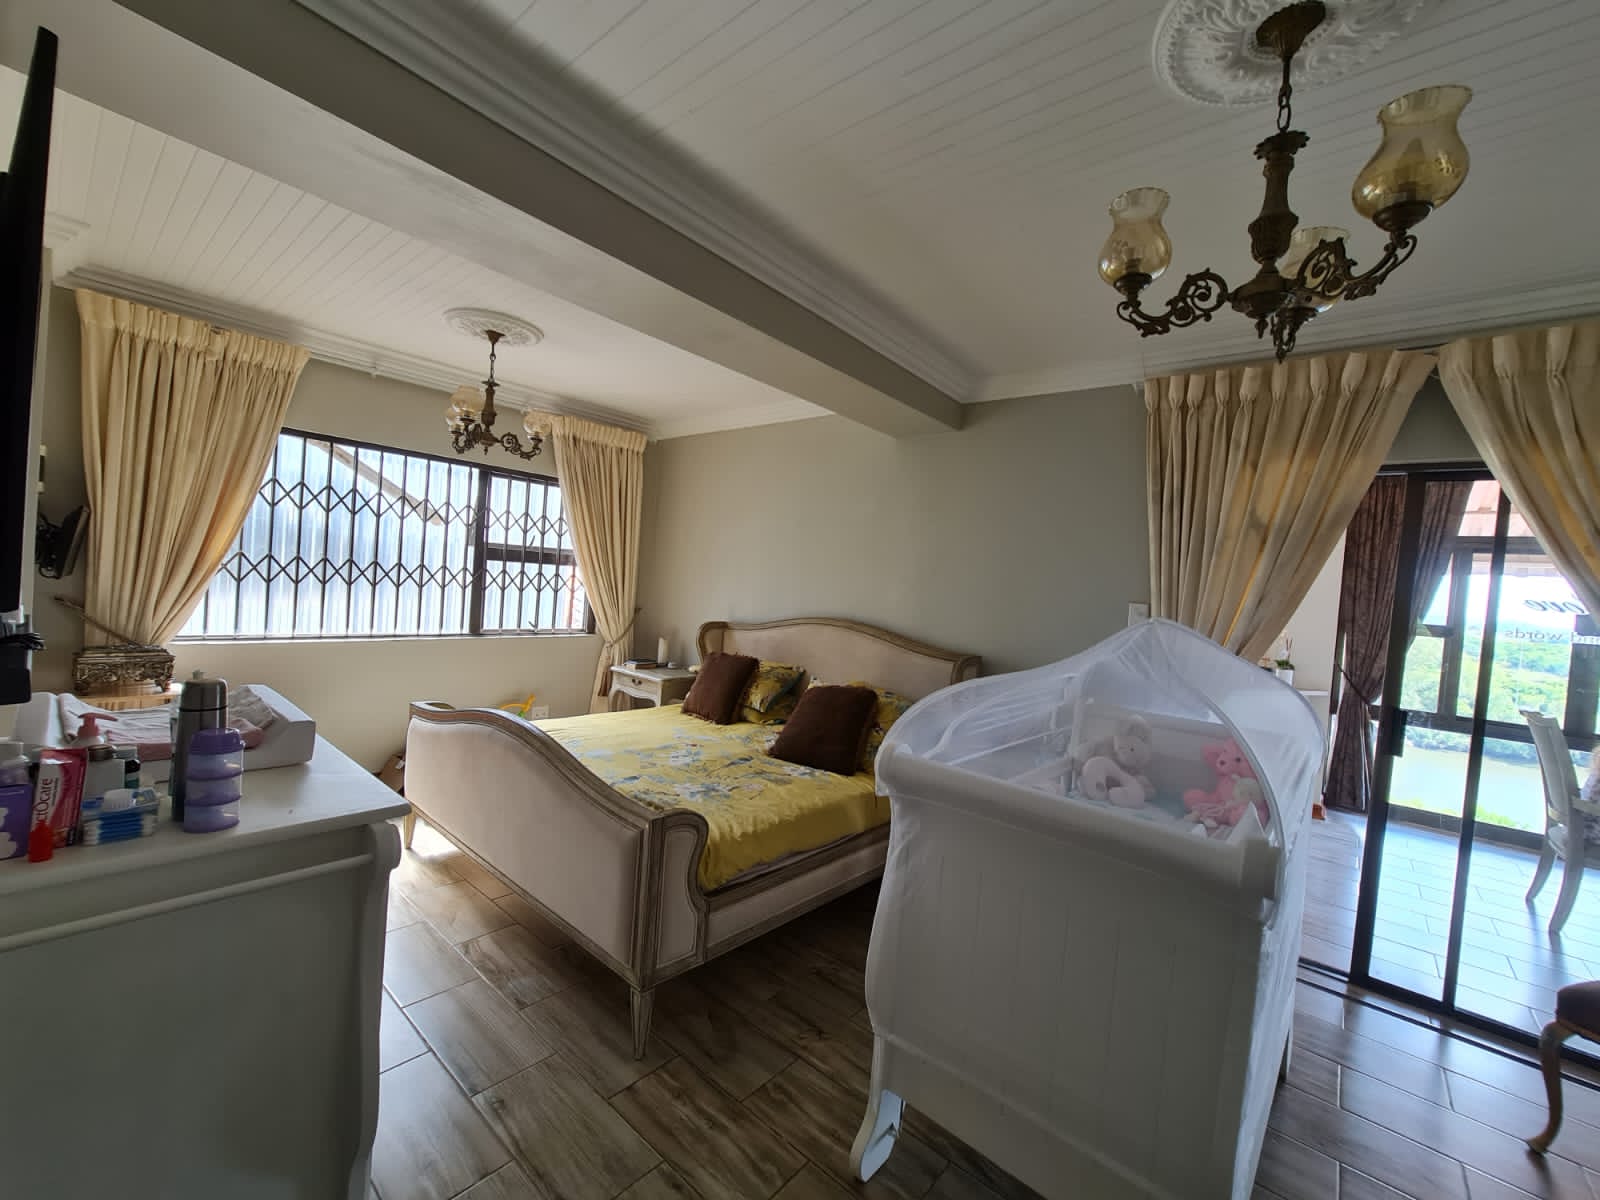 5 Bedroom Property for Sale in Vaaloewer Gauteng